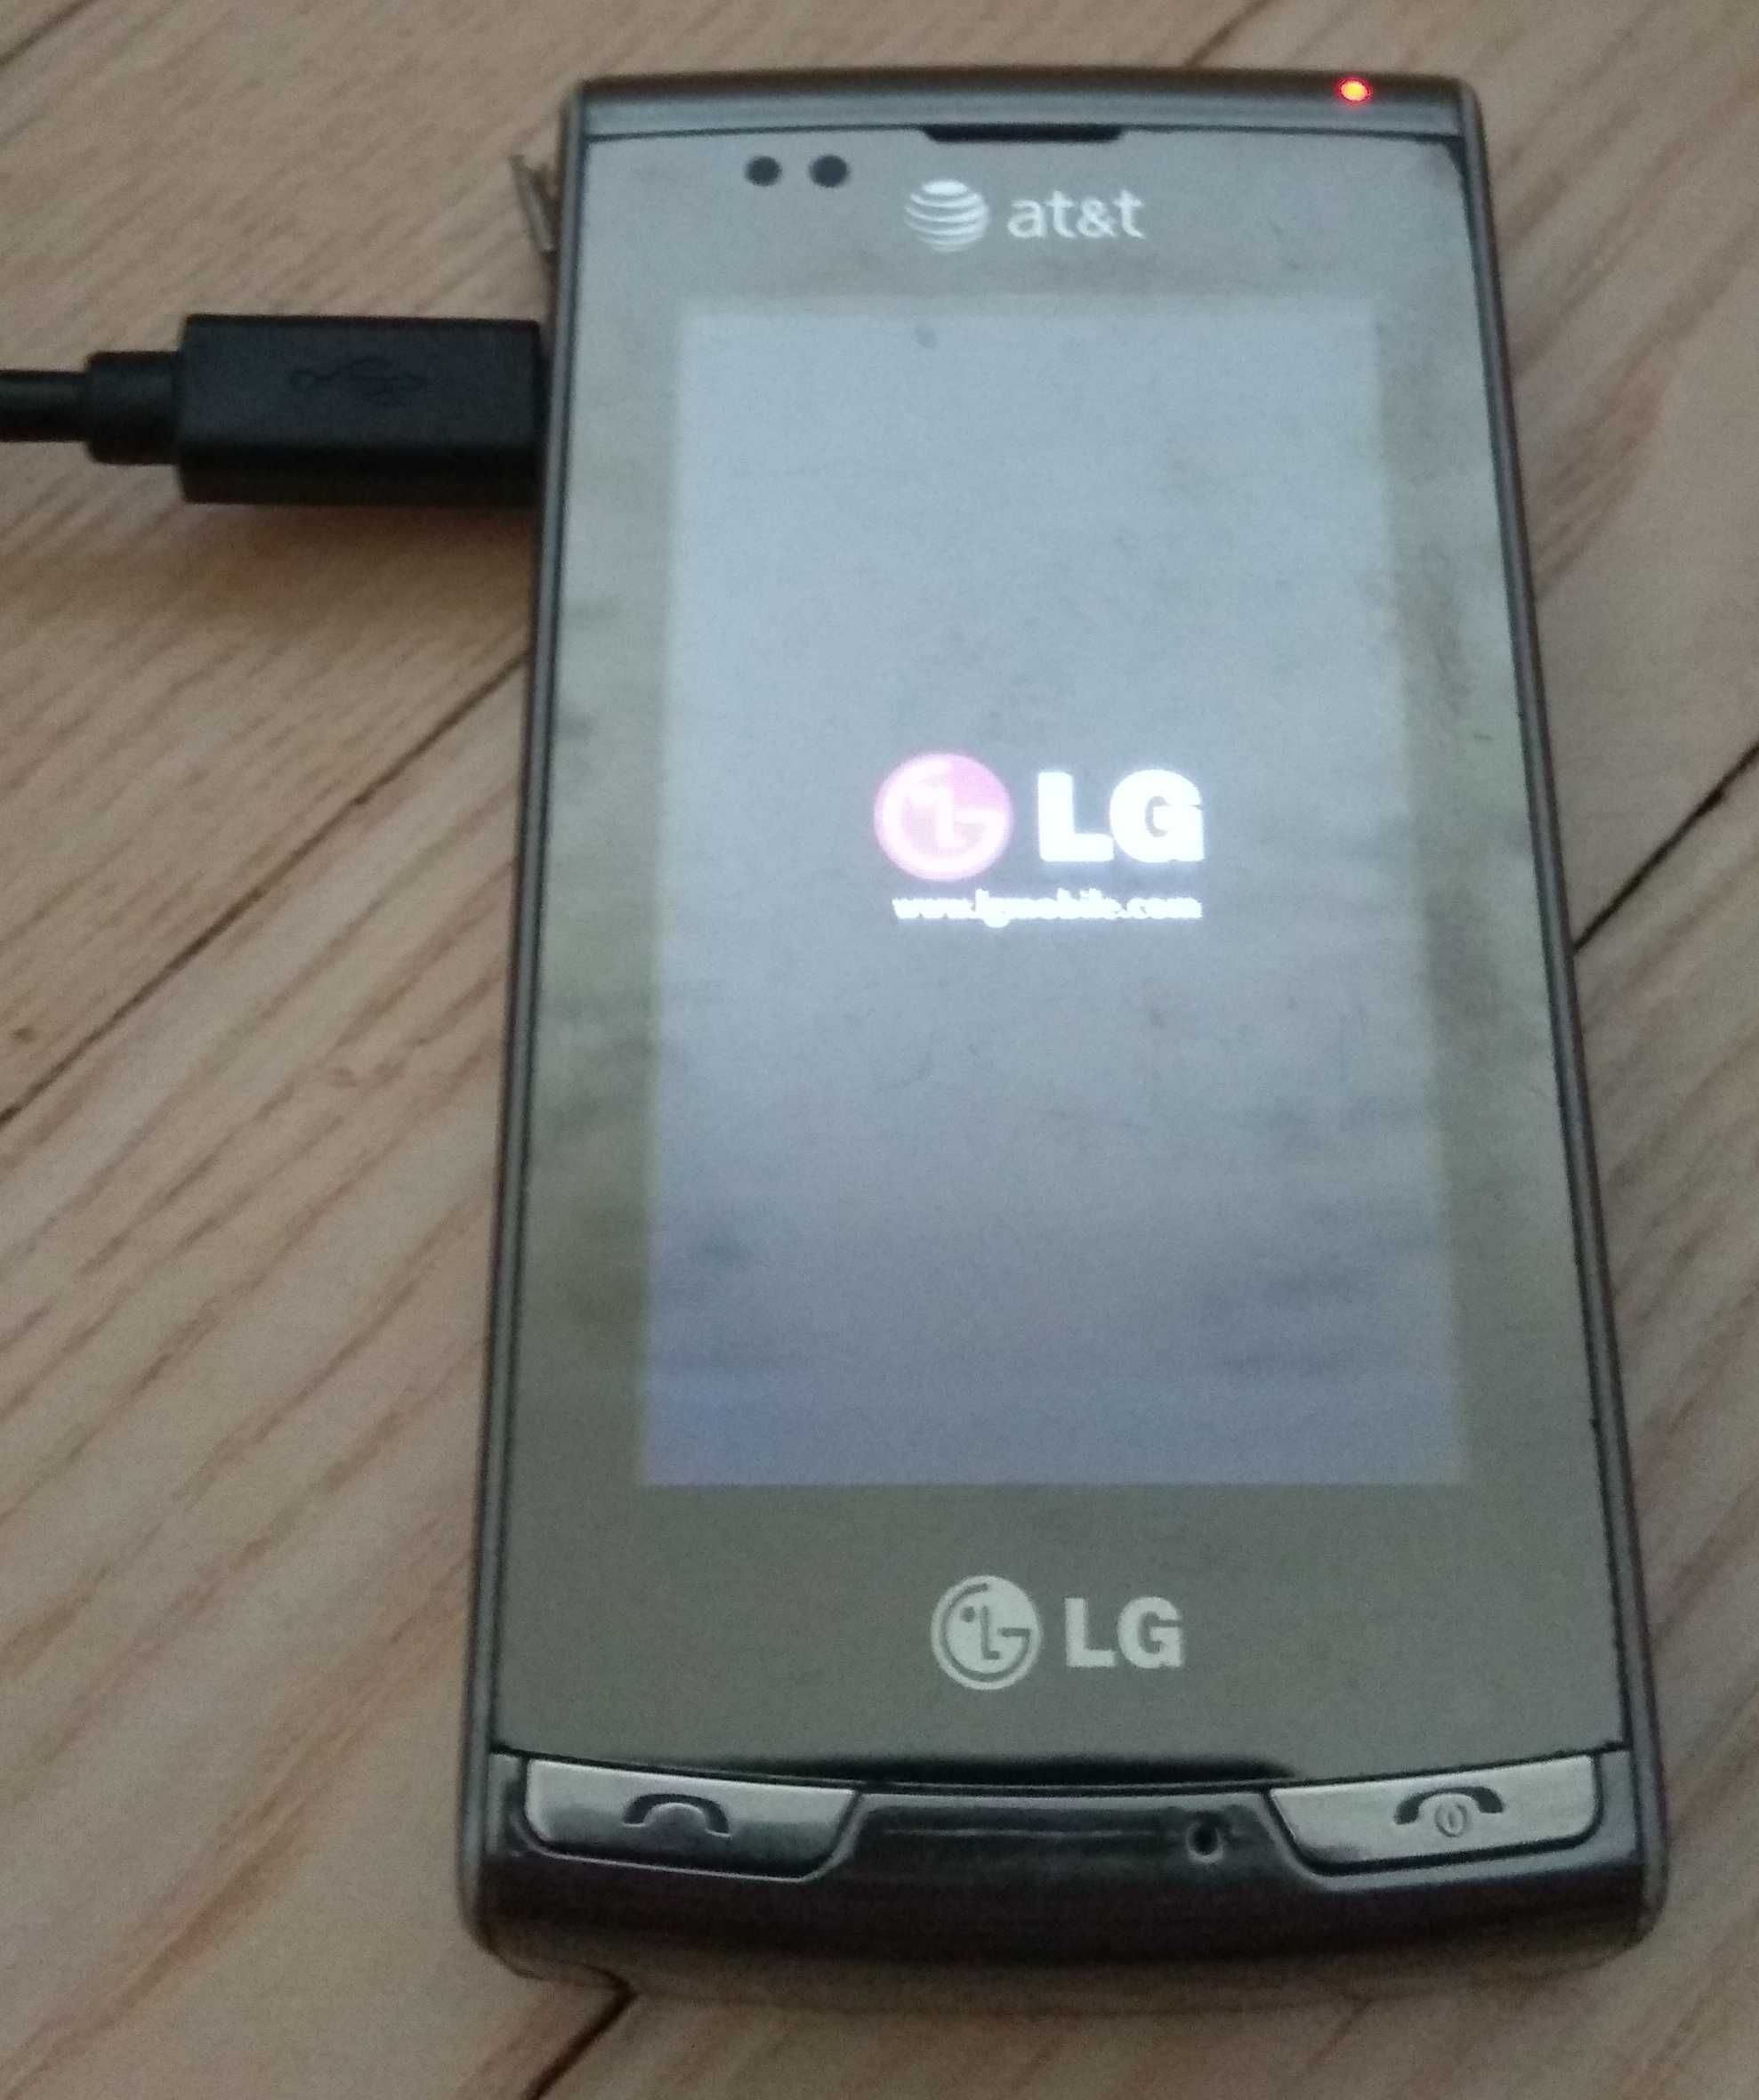 Продам в коллекцию раритетный смартфон LG Incite.